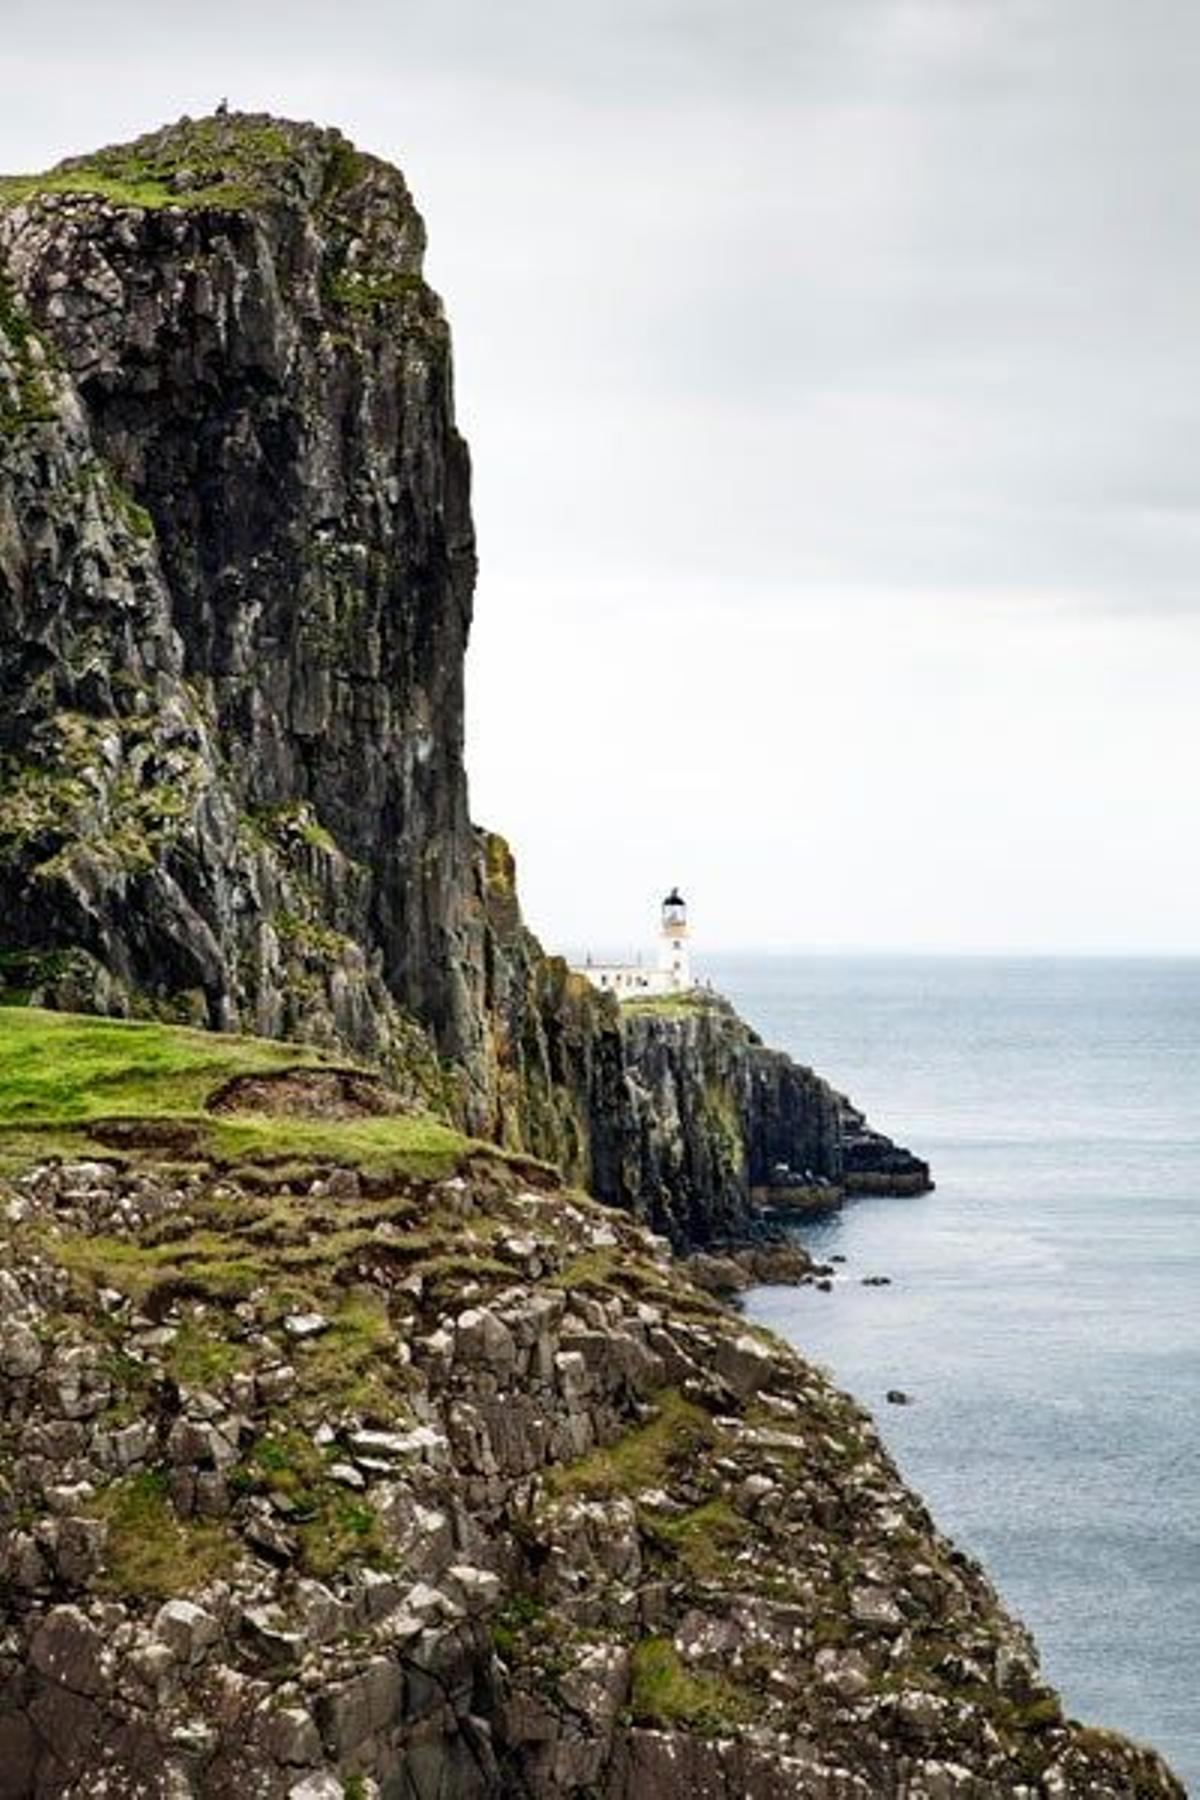 La isla de Skye, la más grande de las Hébridas con 75 kilómetros de largo y 22 de ancho, esconde rincones de belleza inaccesible.